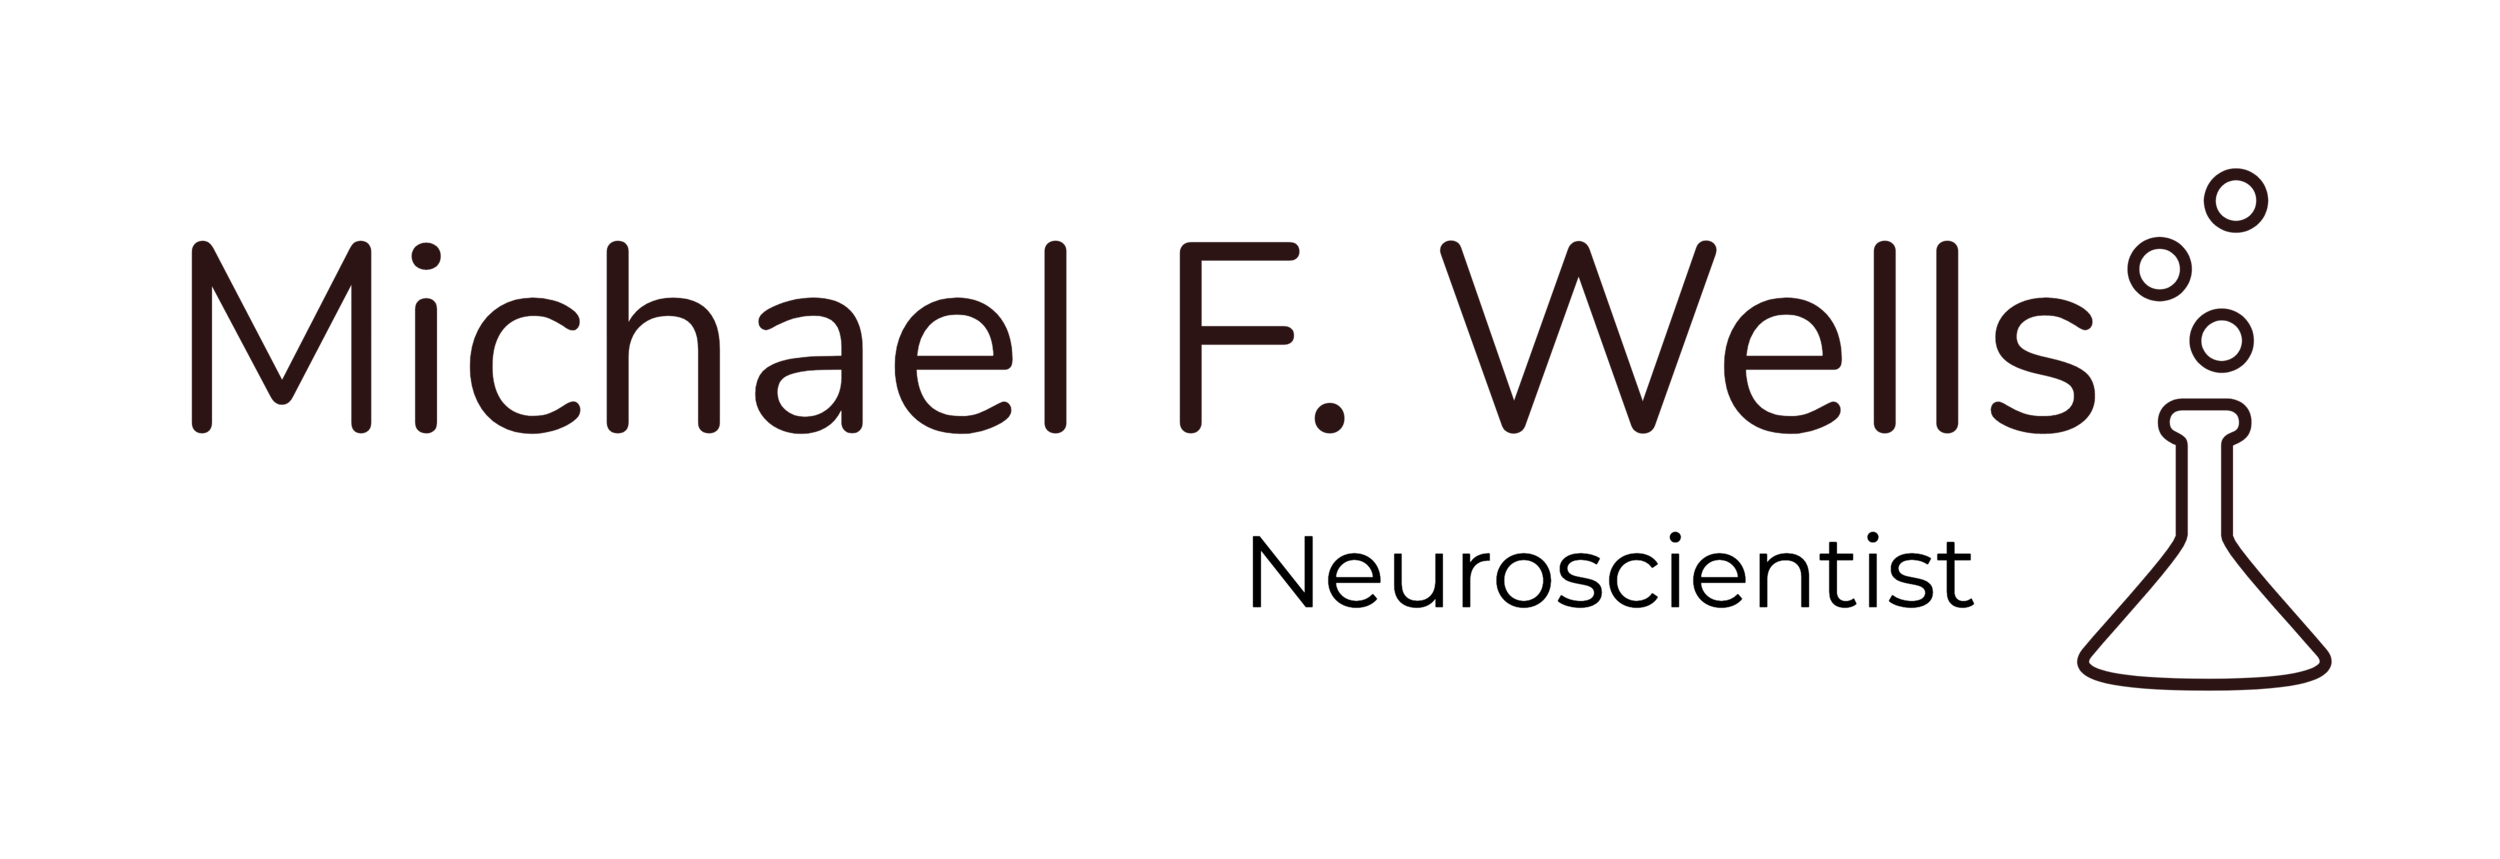 Michael F. Wells